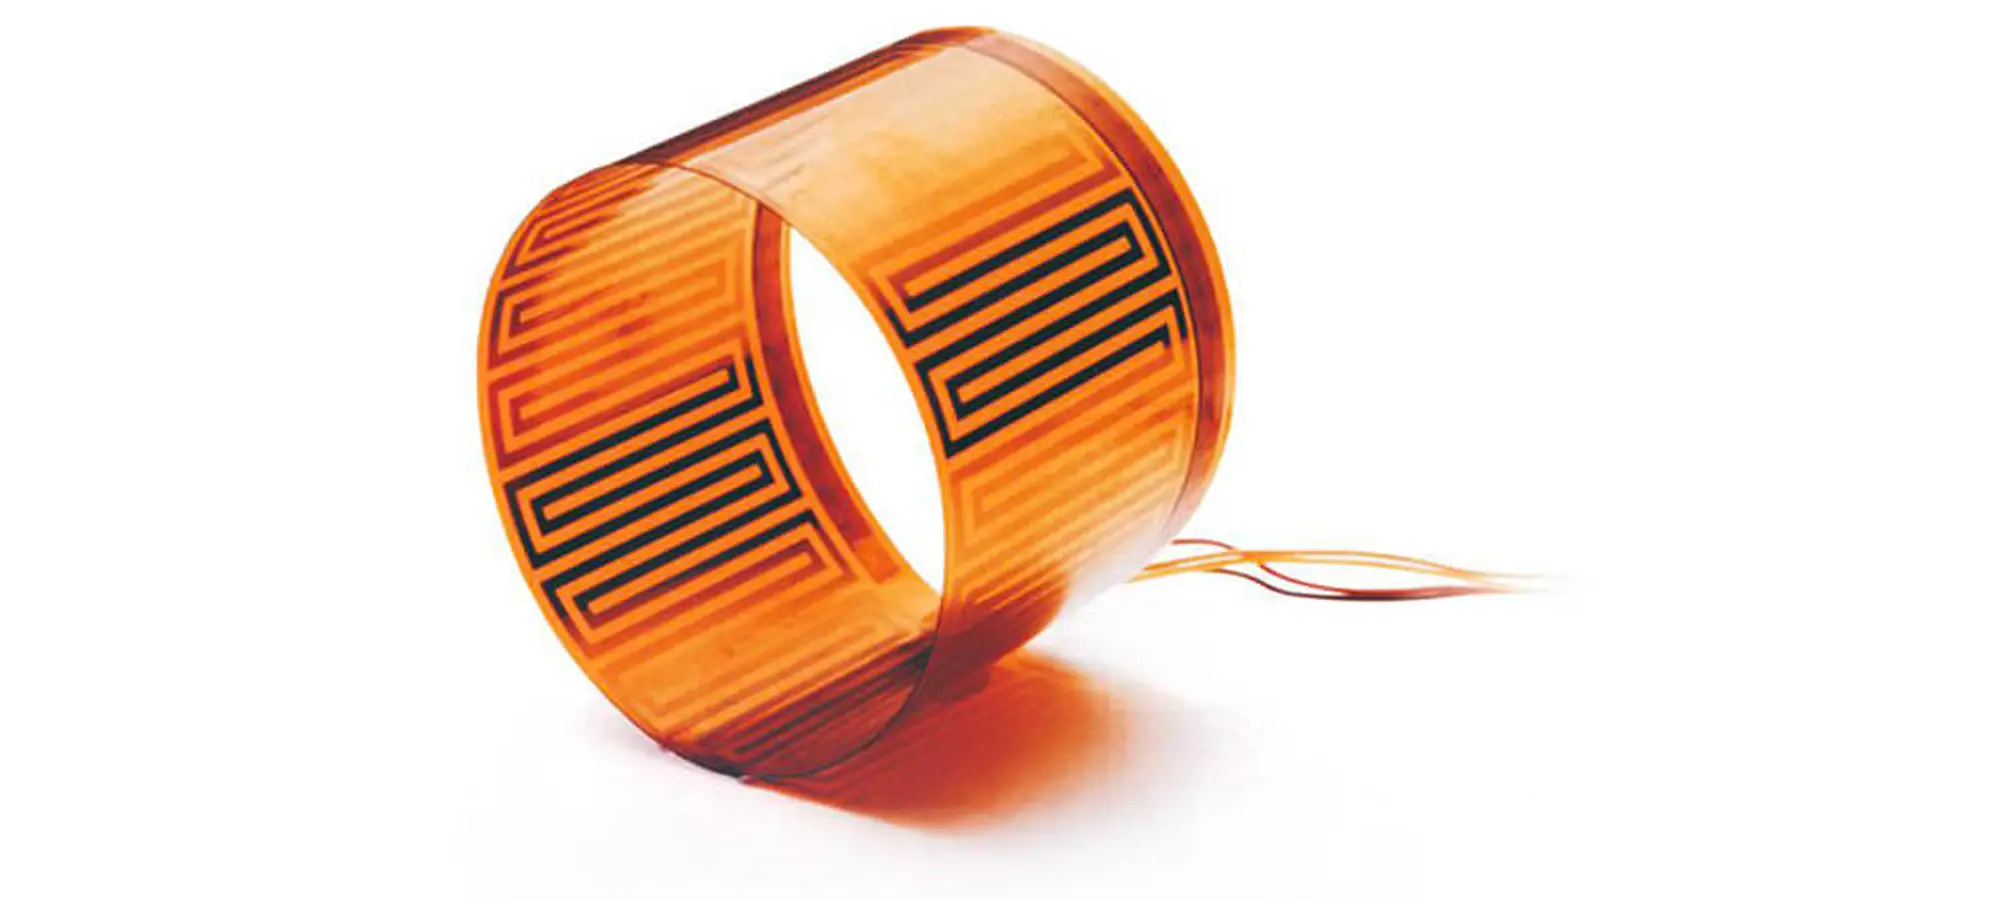 nanoscale copper chip